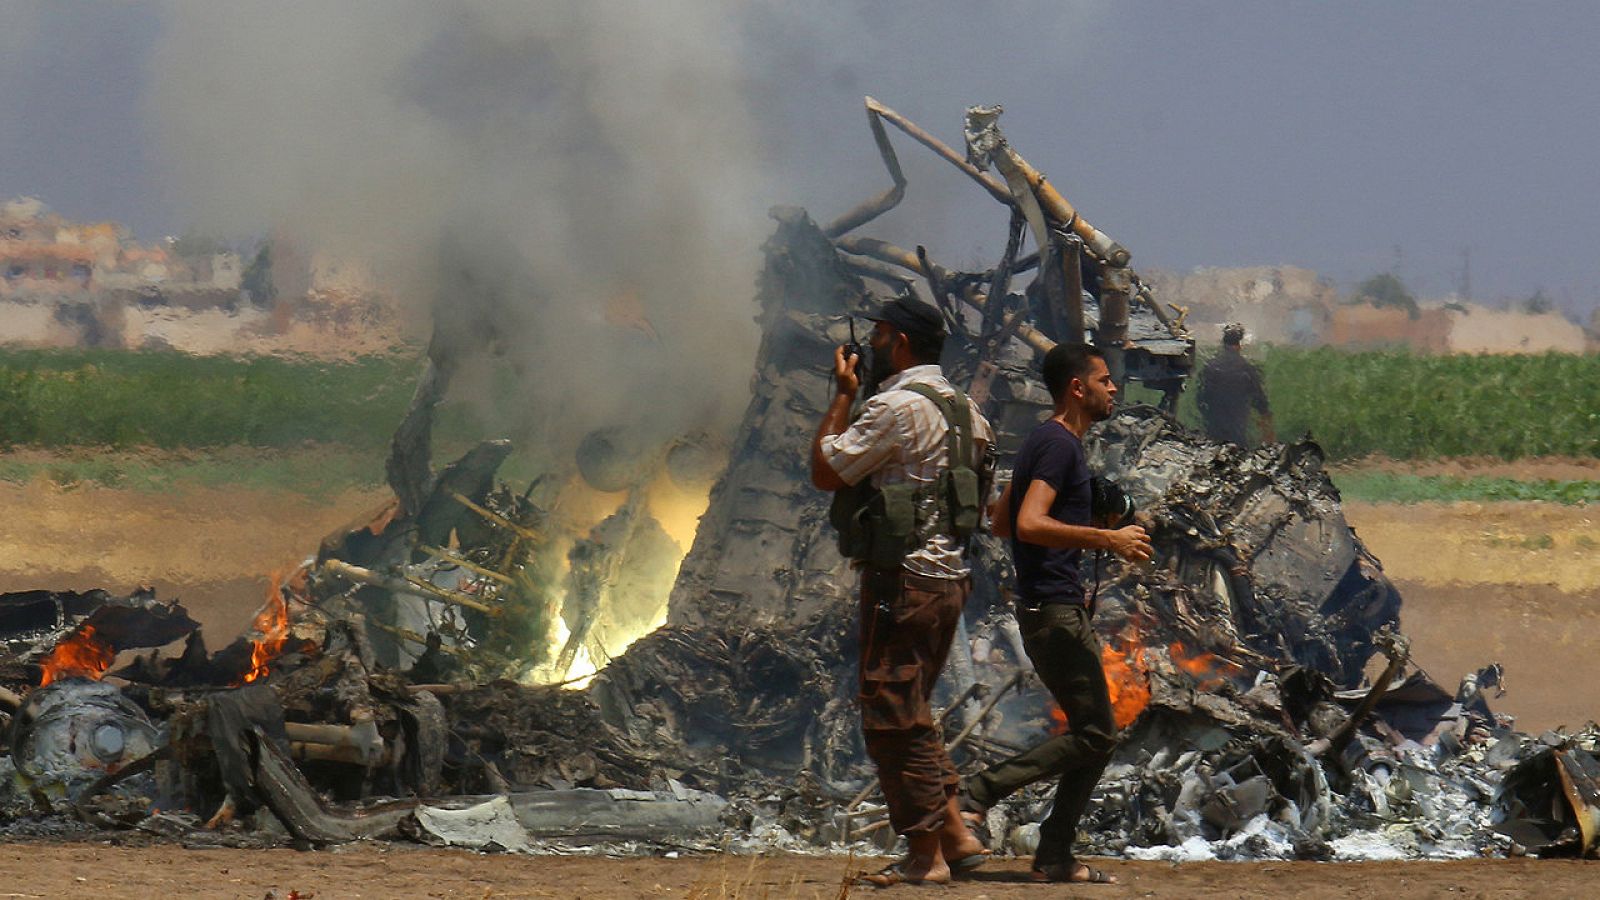 Restos del helicóptero ruso derribado en Idleb, Siria, 1 de agosto de 2016. REUTERS/Ammar Abdullah